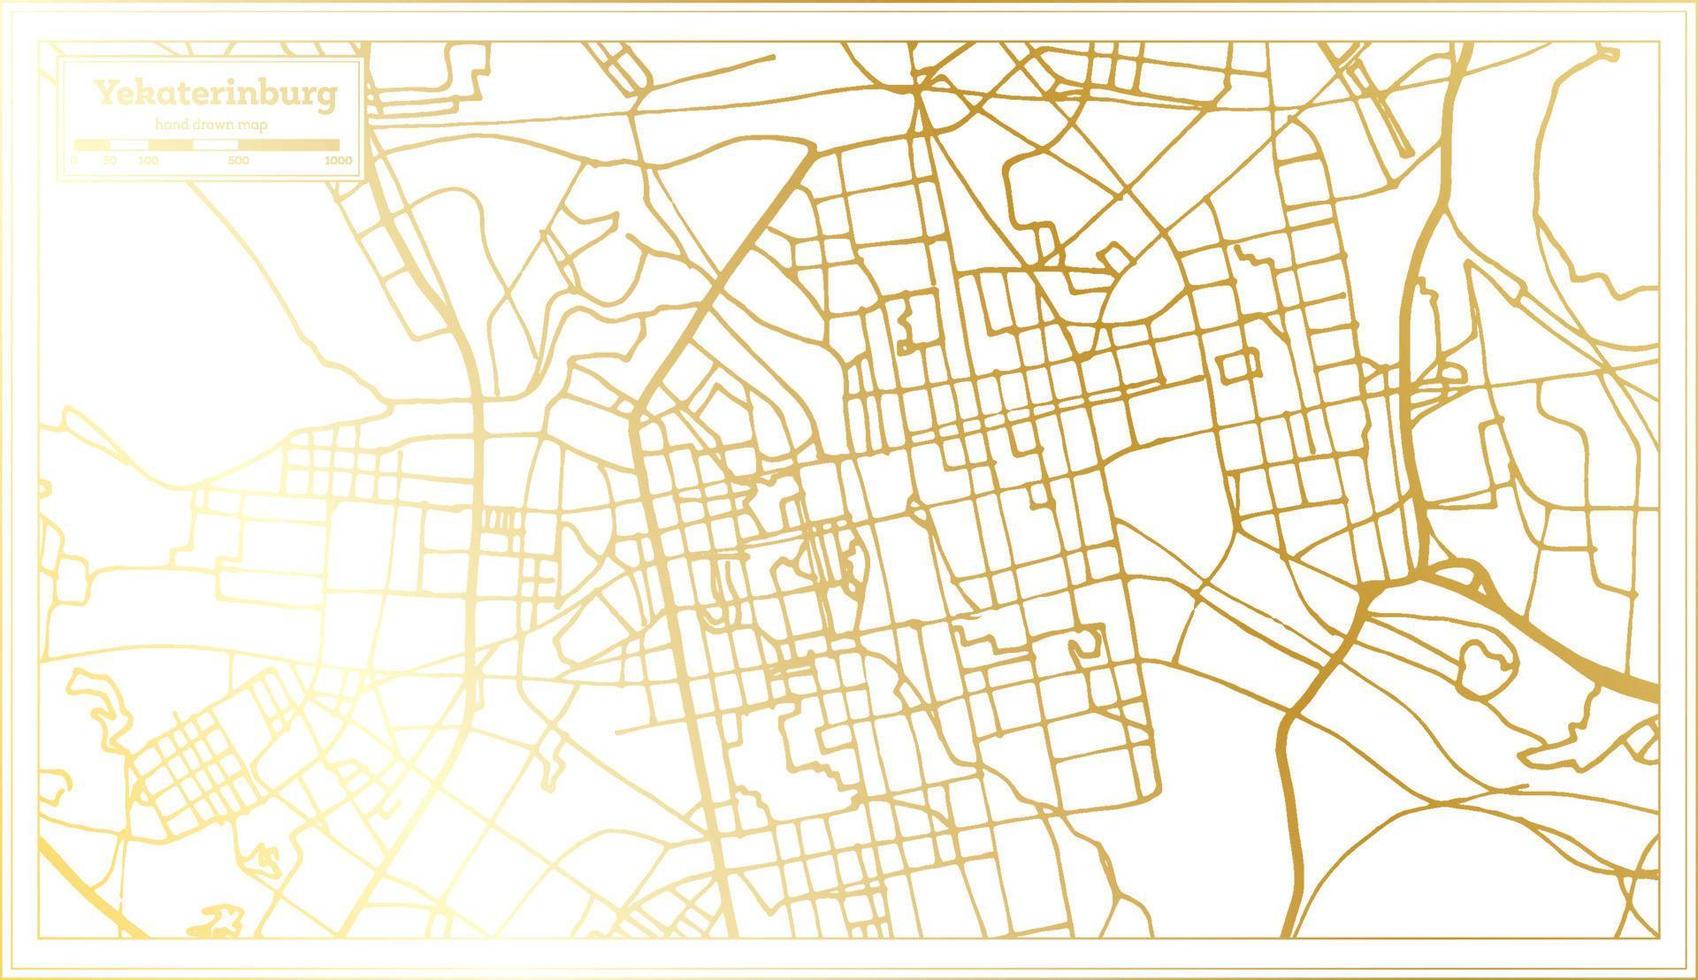 plan de la ville d'ekaterinbourg en russie dans un style rétro de couleur dorée. carte muette. vecteur